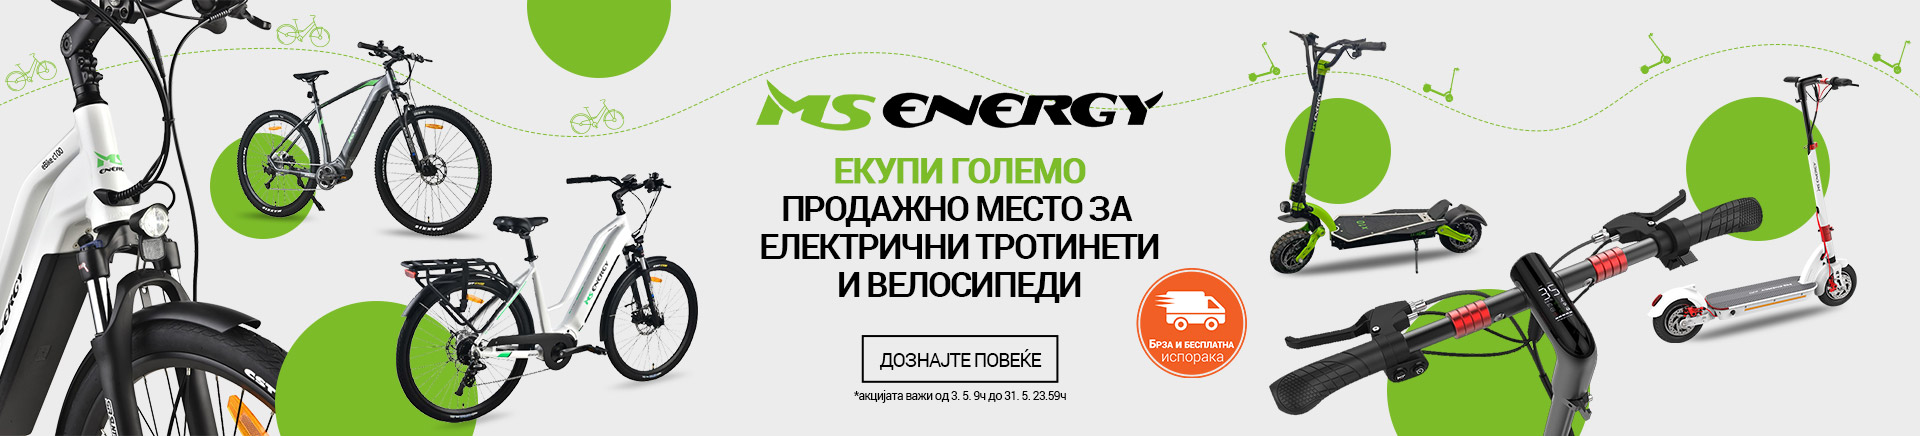 MK_MS Energy mix TABLET 768 X 436.jpg